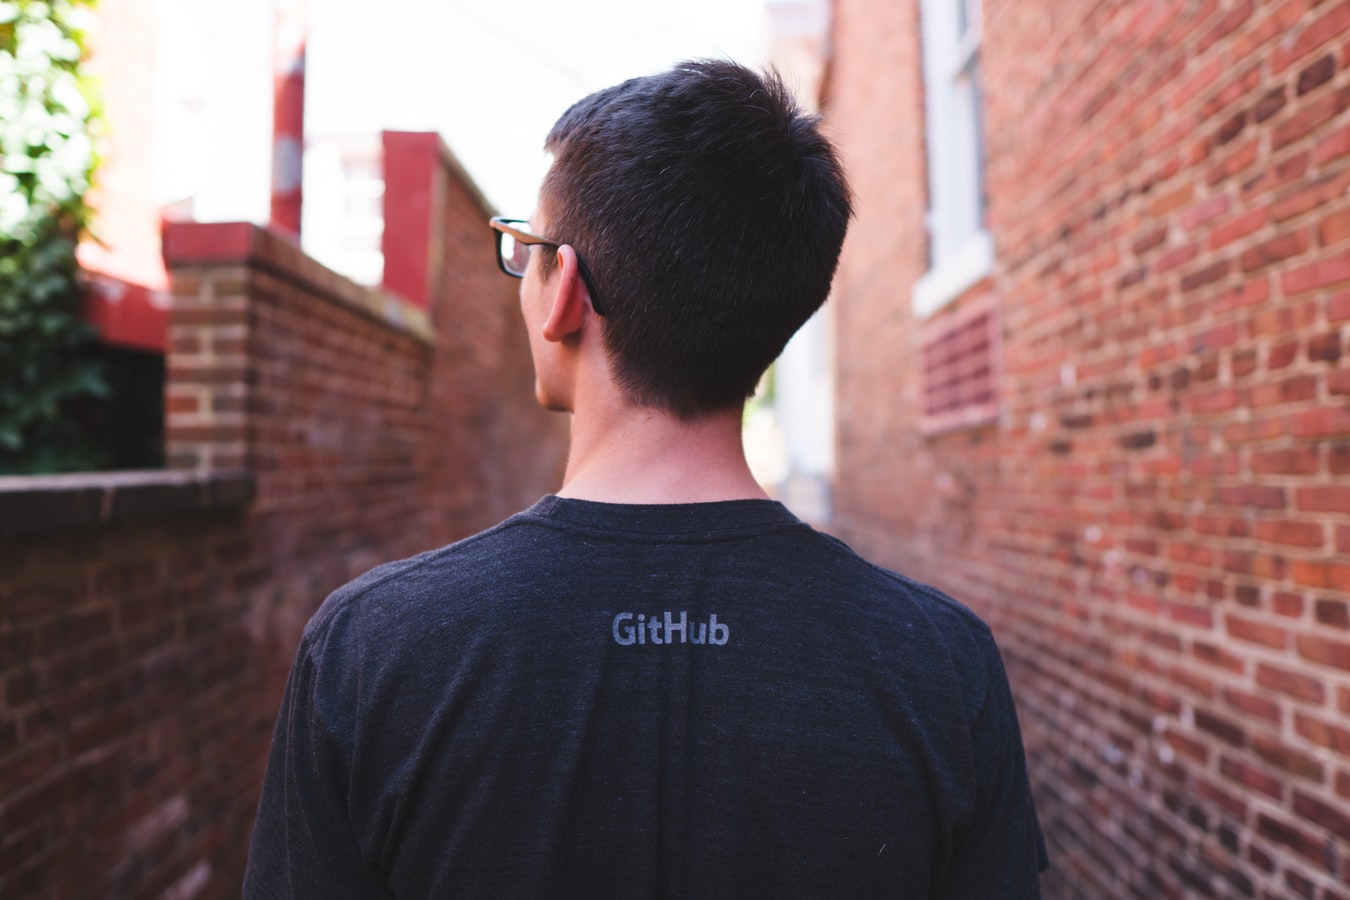 Github начнет публиковать в открытом доступе планы развития своего продукта